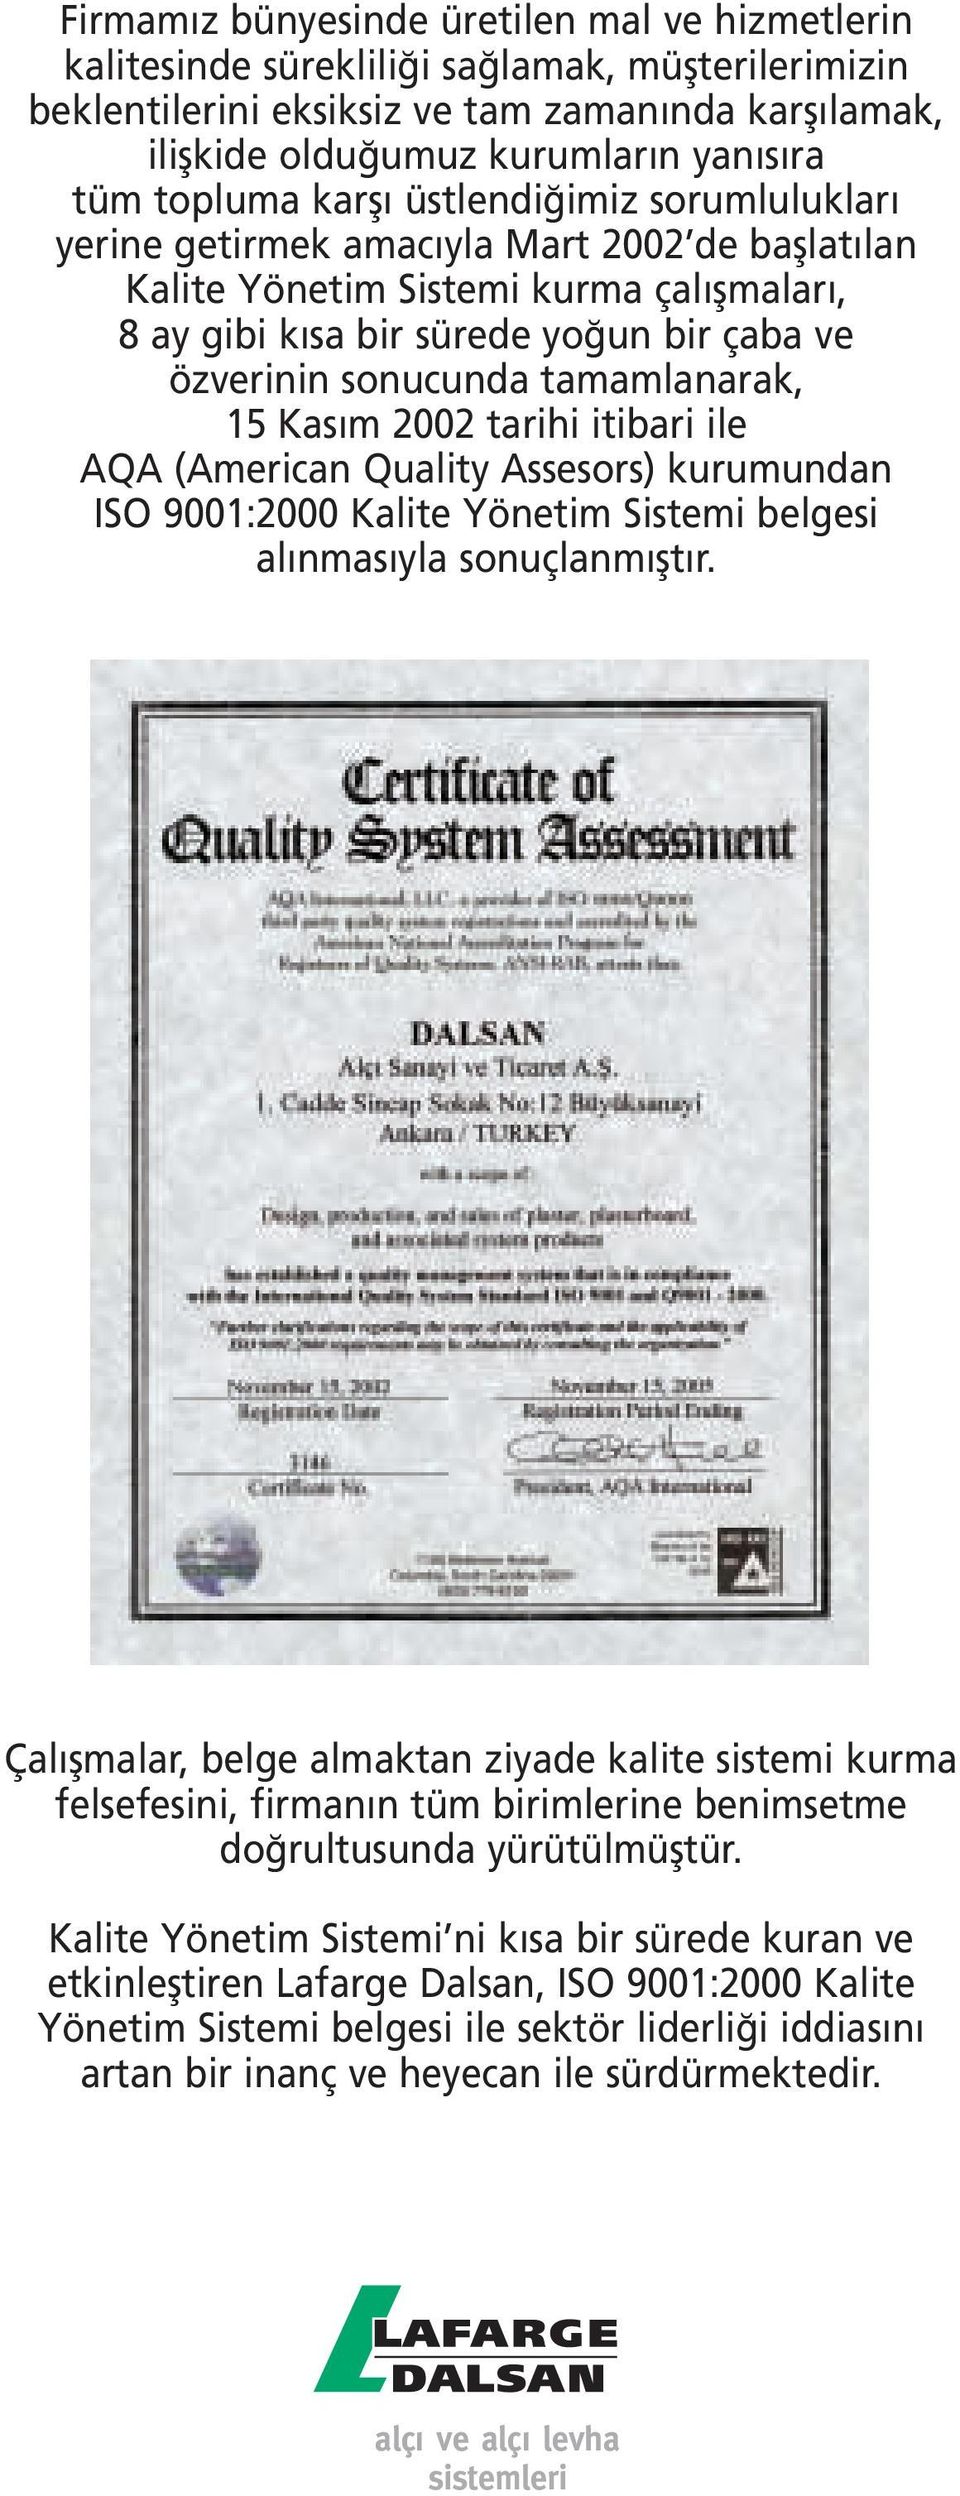 tamamlanarak, 15 Kas m 2002 tarihi itibari ile AQA (American Quality Assesors) kurumundan ISO 9001:2000 Kalite Yönetim Sistemi belgesi al nmas yla sonuçlanm flt r.